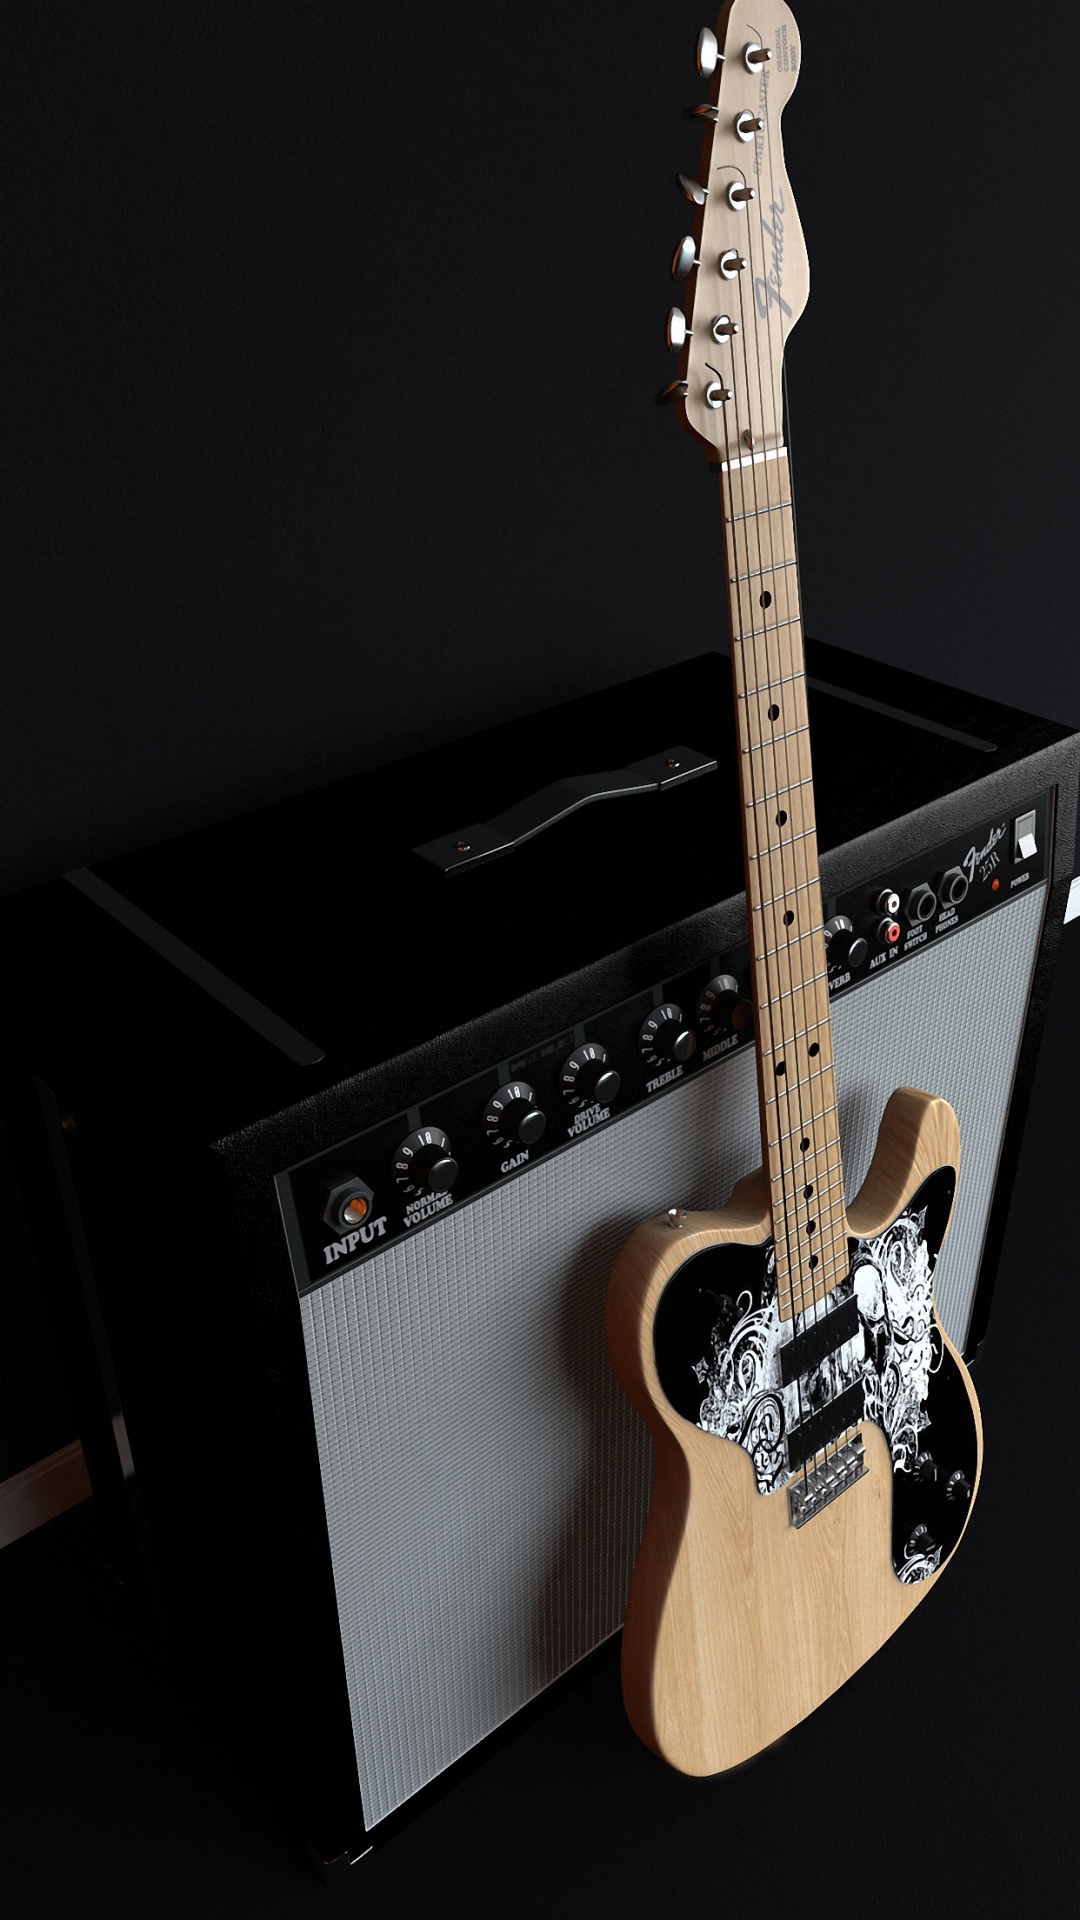 Plus HD Fender Music Guitar iPhone 6s Wallpaper